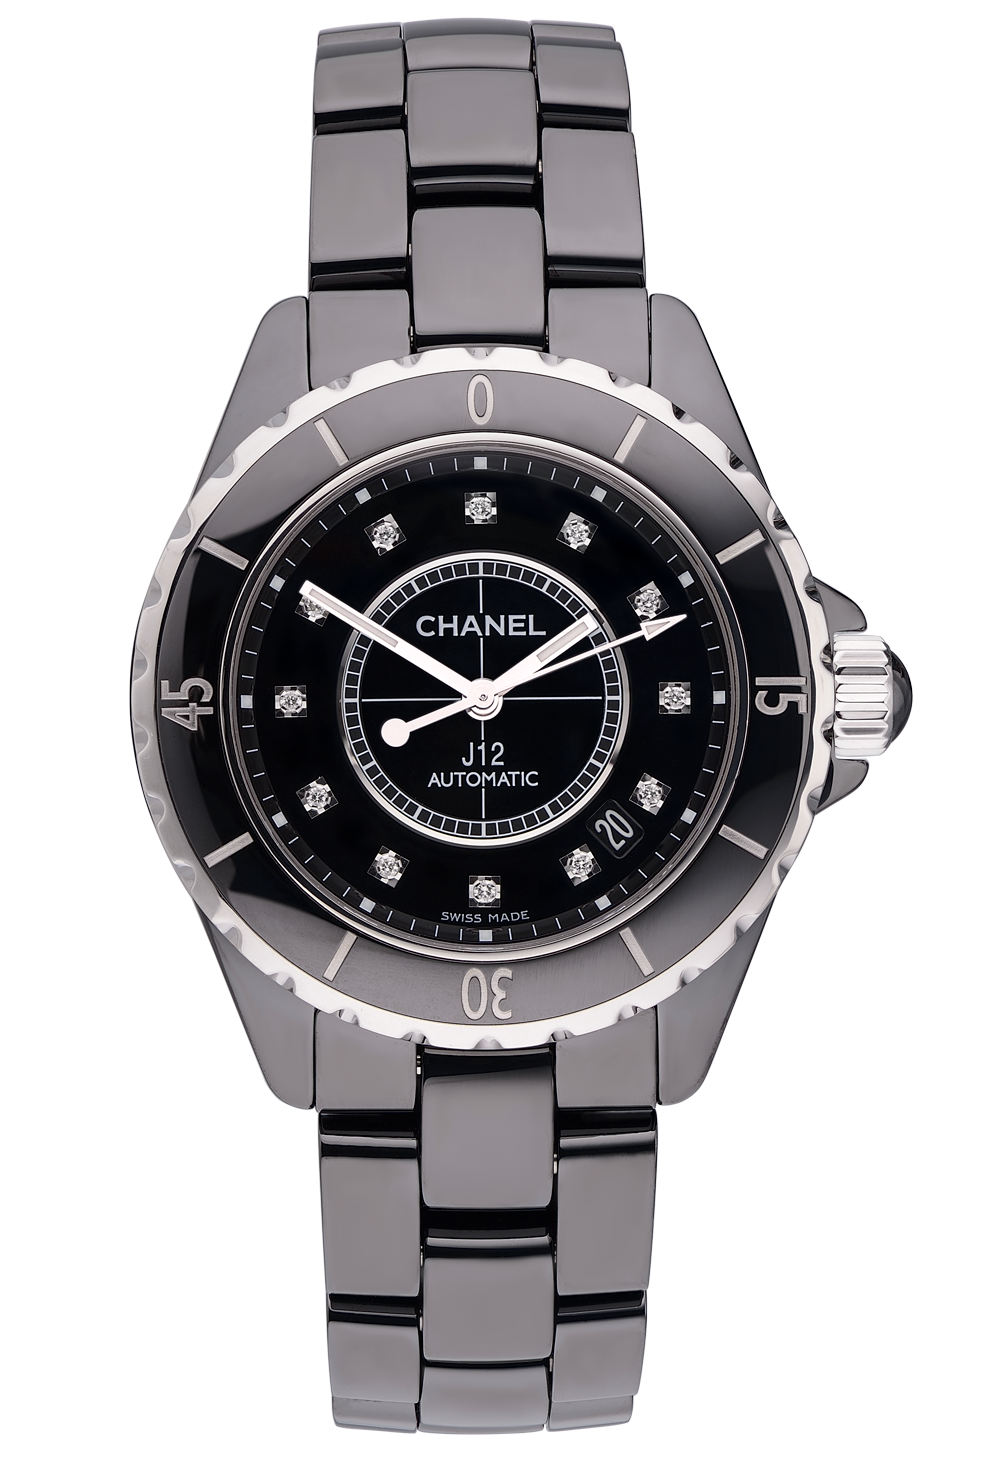 Швейцарские часы Chanel Automatic J12(1401) №3